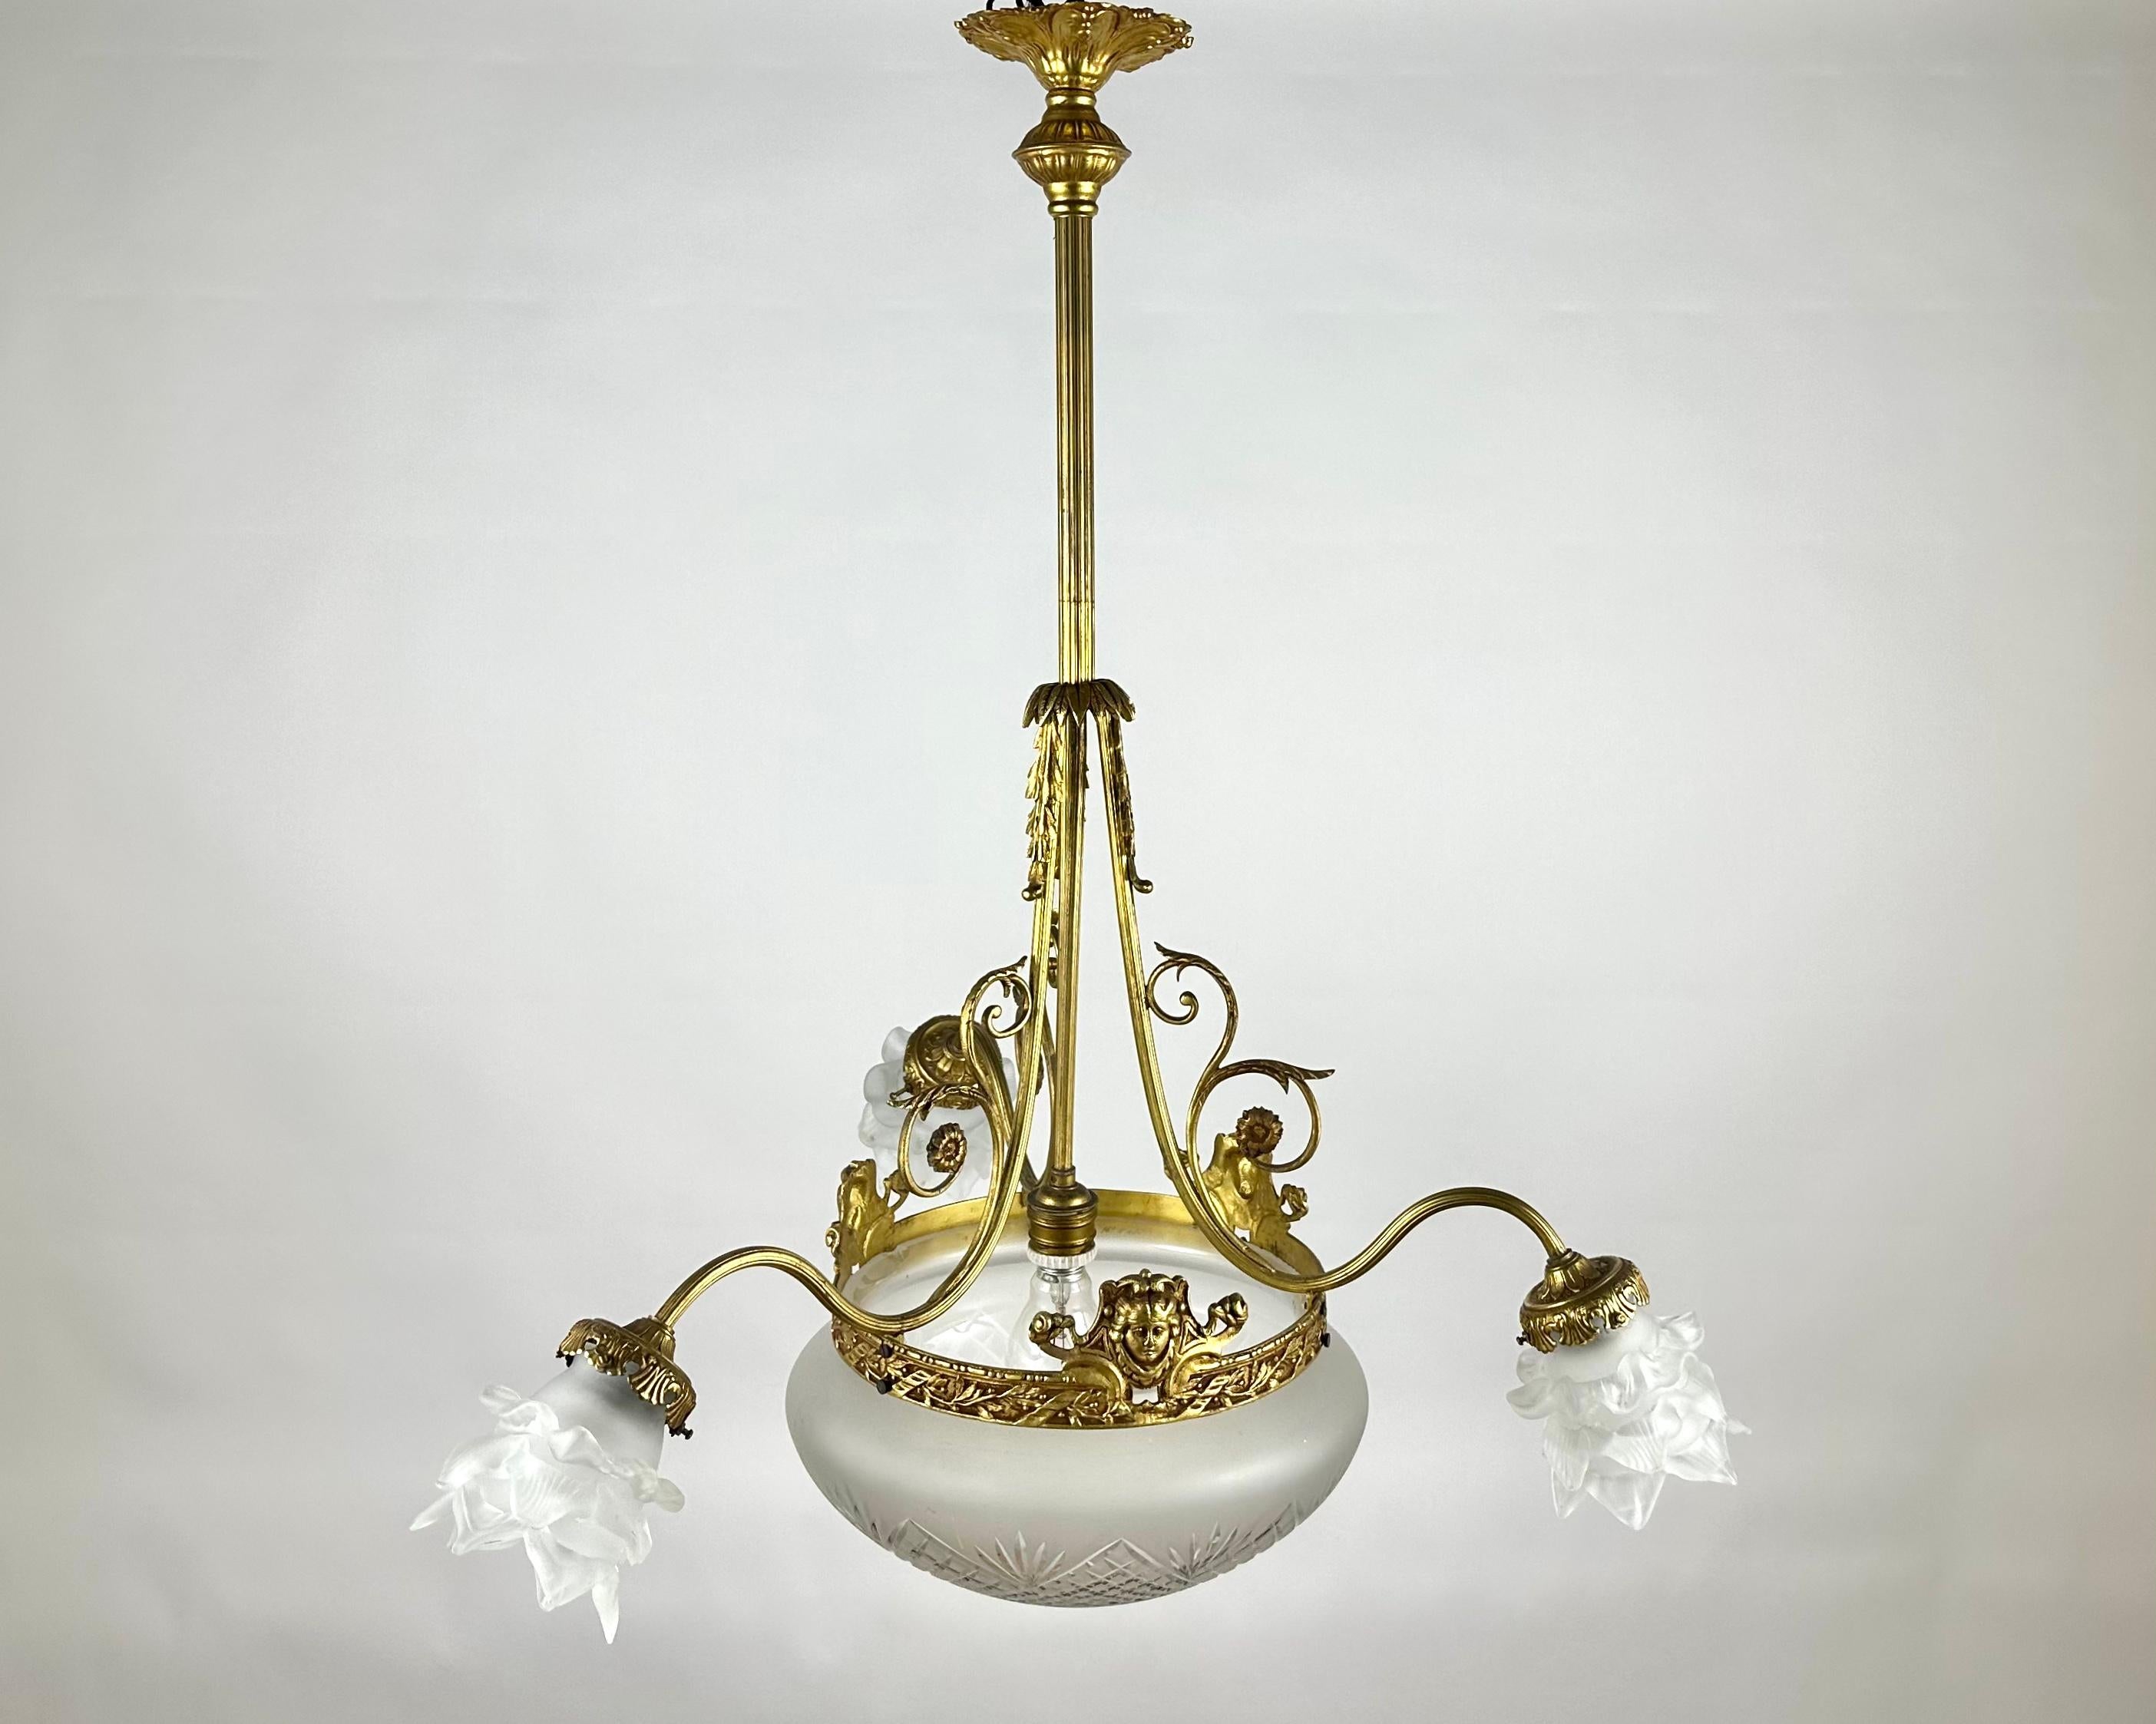 Schöne antike Kronleuchter ist in Frankreich hergestellt, in den 1920er Jahren. 

Drei matte weiße Lampenschirme, die von gealterter Bronze umrahmt sind, wirken einerseits lakonisch, andererseits elegant.

In der Mitte befindet sich ein runder,